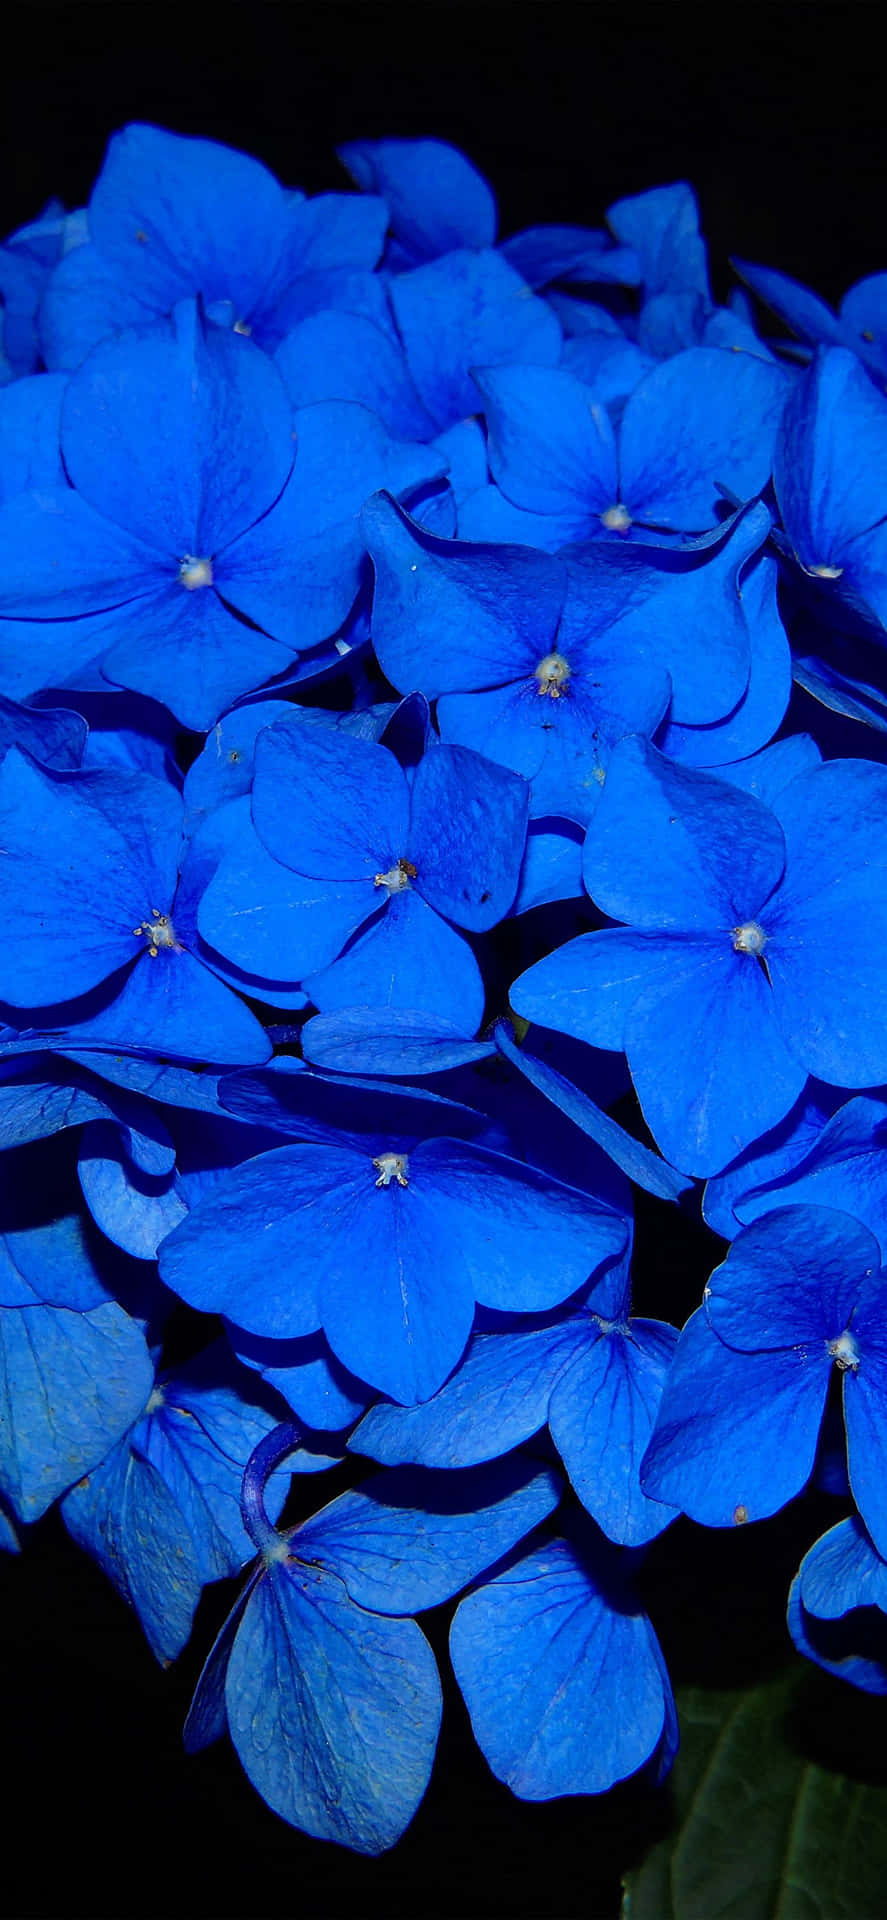 Imagende Flores Azules De Hortensia Francesa